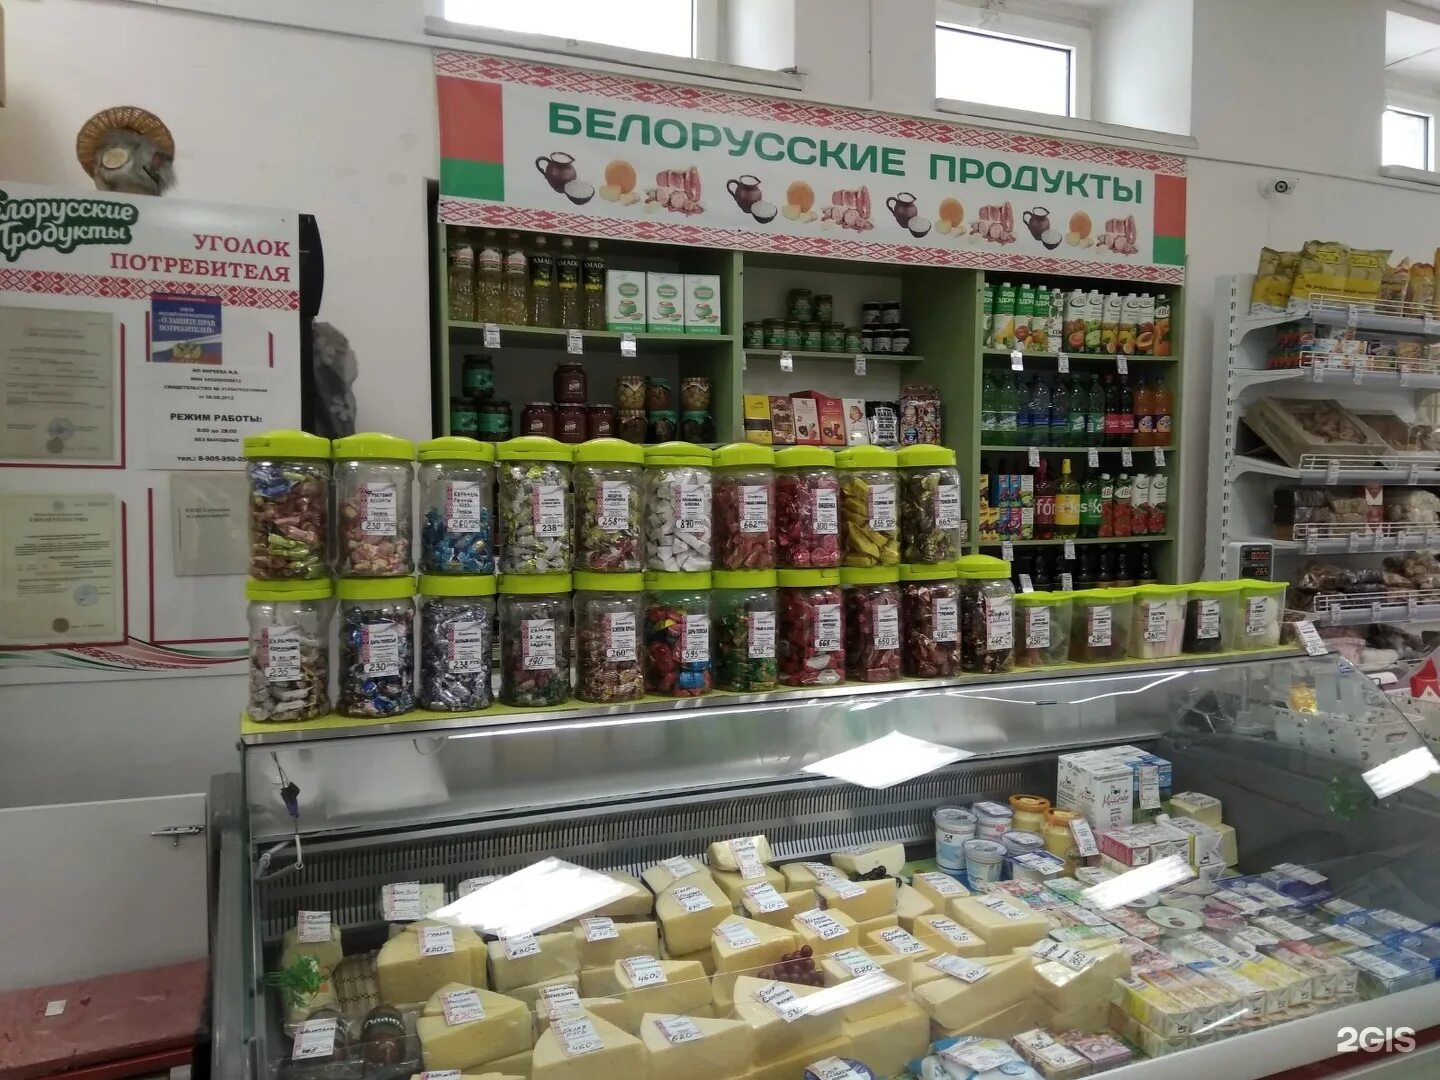 Продуктовые ип. Белорусские товары. Беларусь продукты магазины. Белорусские продукты. Магазины в Белоруссии.